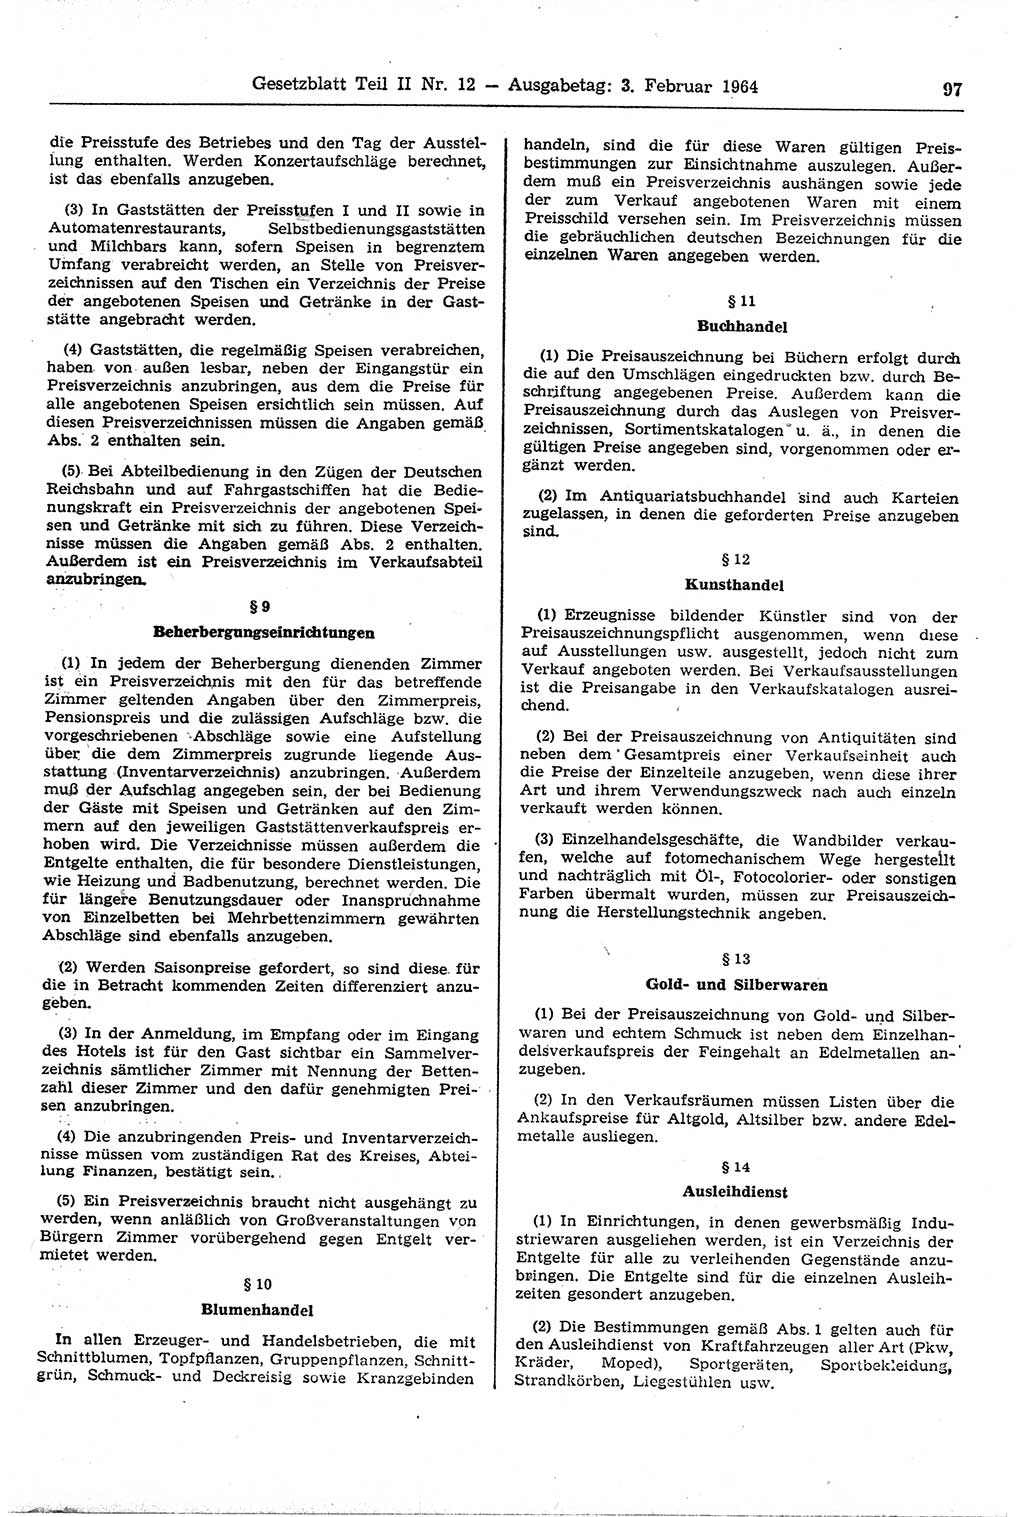 Gesetzblatt (GBl.) der Deutschen Demokratischen Republik (DDR) Teil ⅠⅠ 1964, Seite 97 (GBl. DDR ⅠⅠ 1964, S. 97)